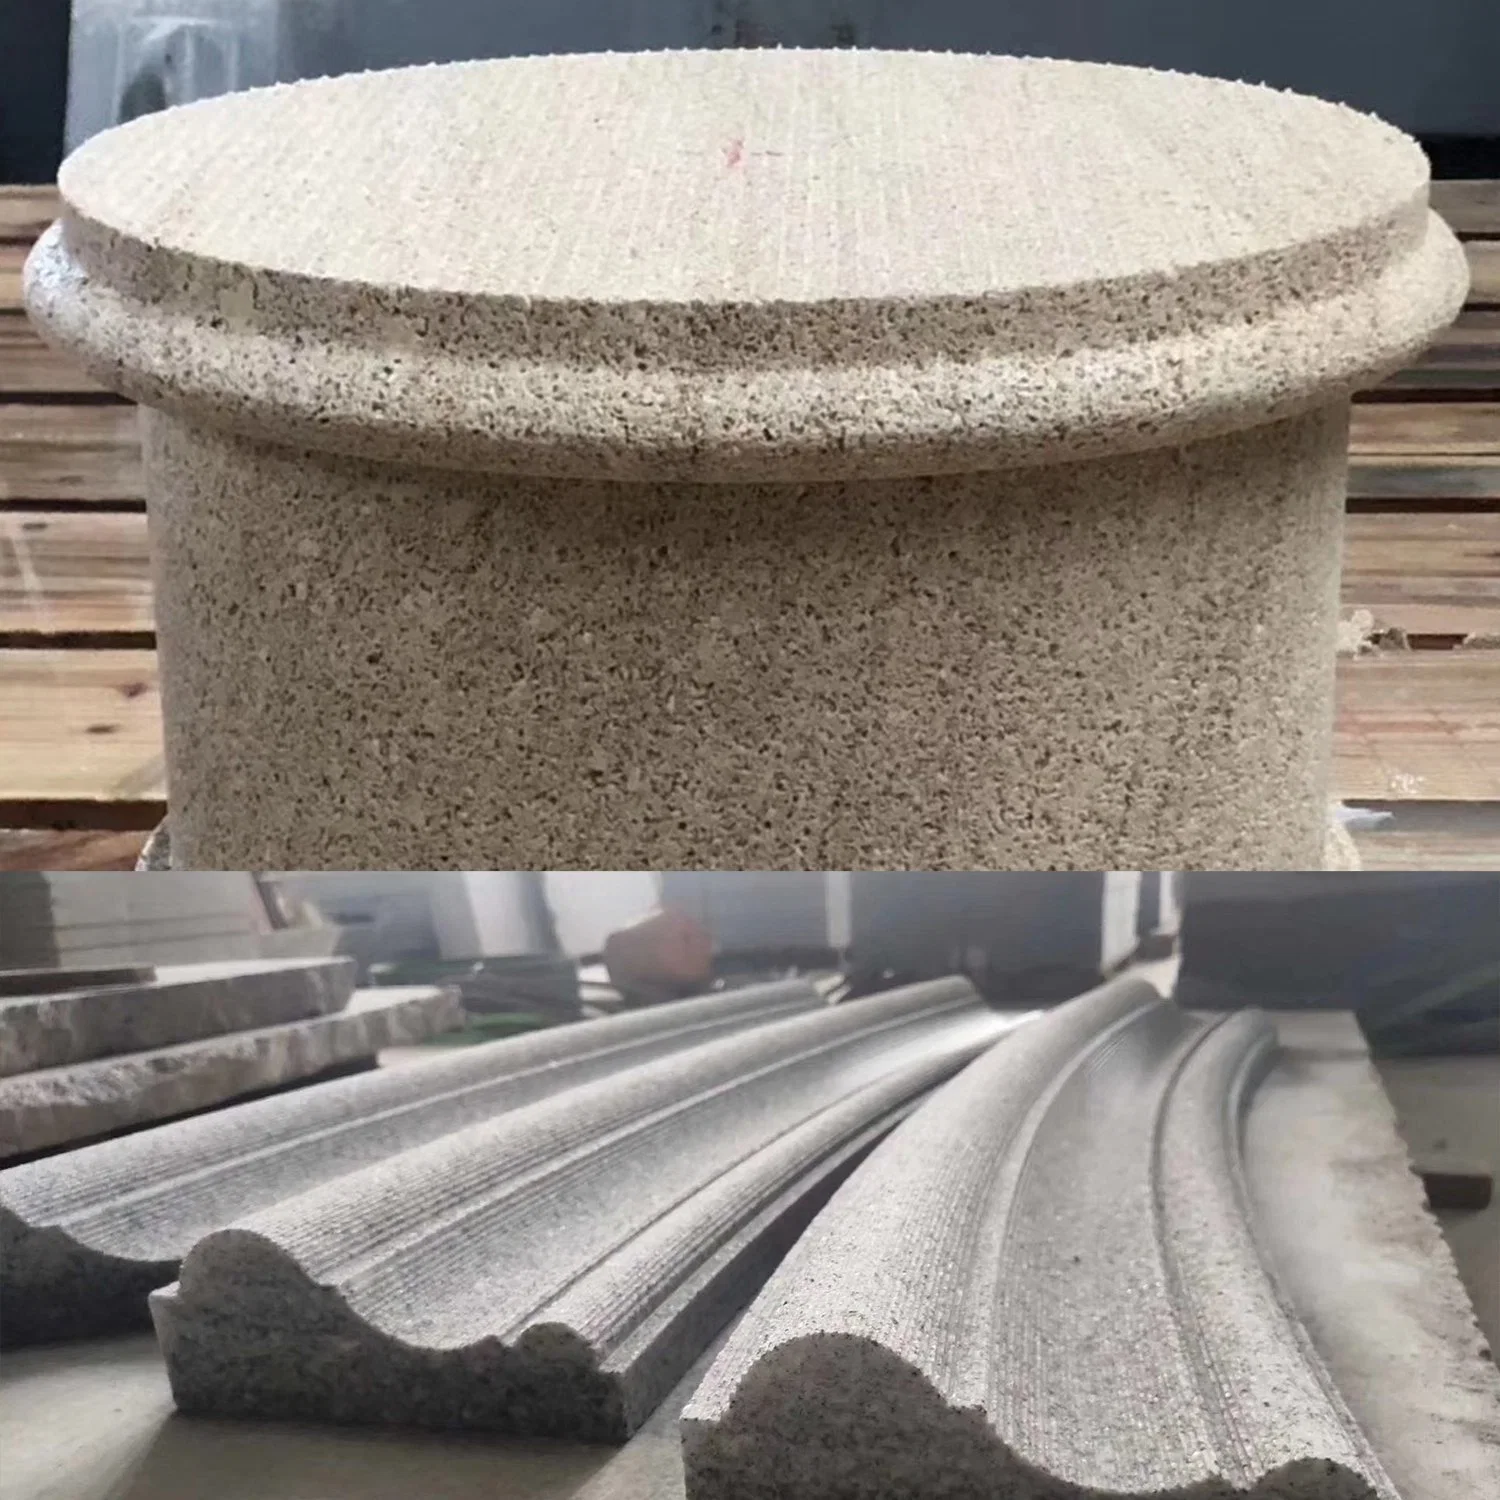 Ruisheng Rcnc-500 máquina de corte de piedra 5 ejes CNC granito de mármol Fresa de alta eficiencia para corte y perfilado de vanidad de sobremesa Maquinaria